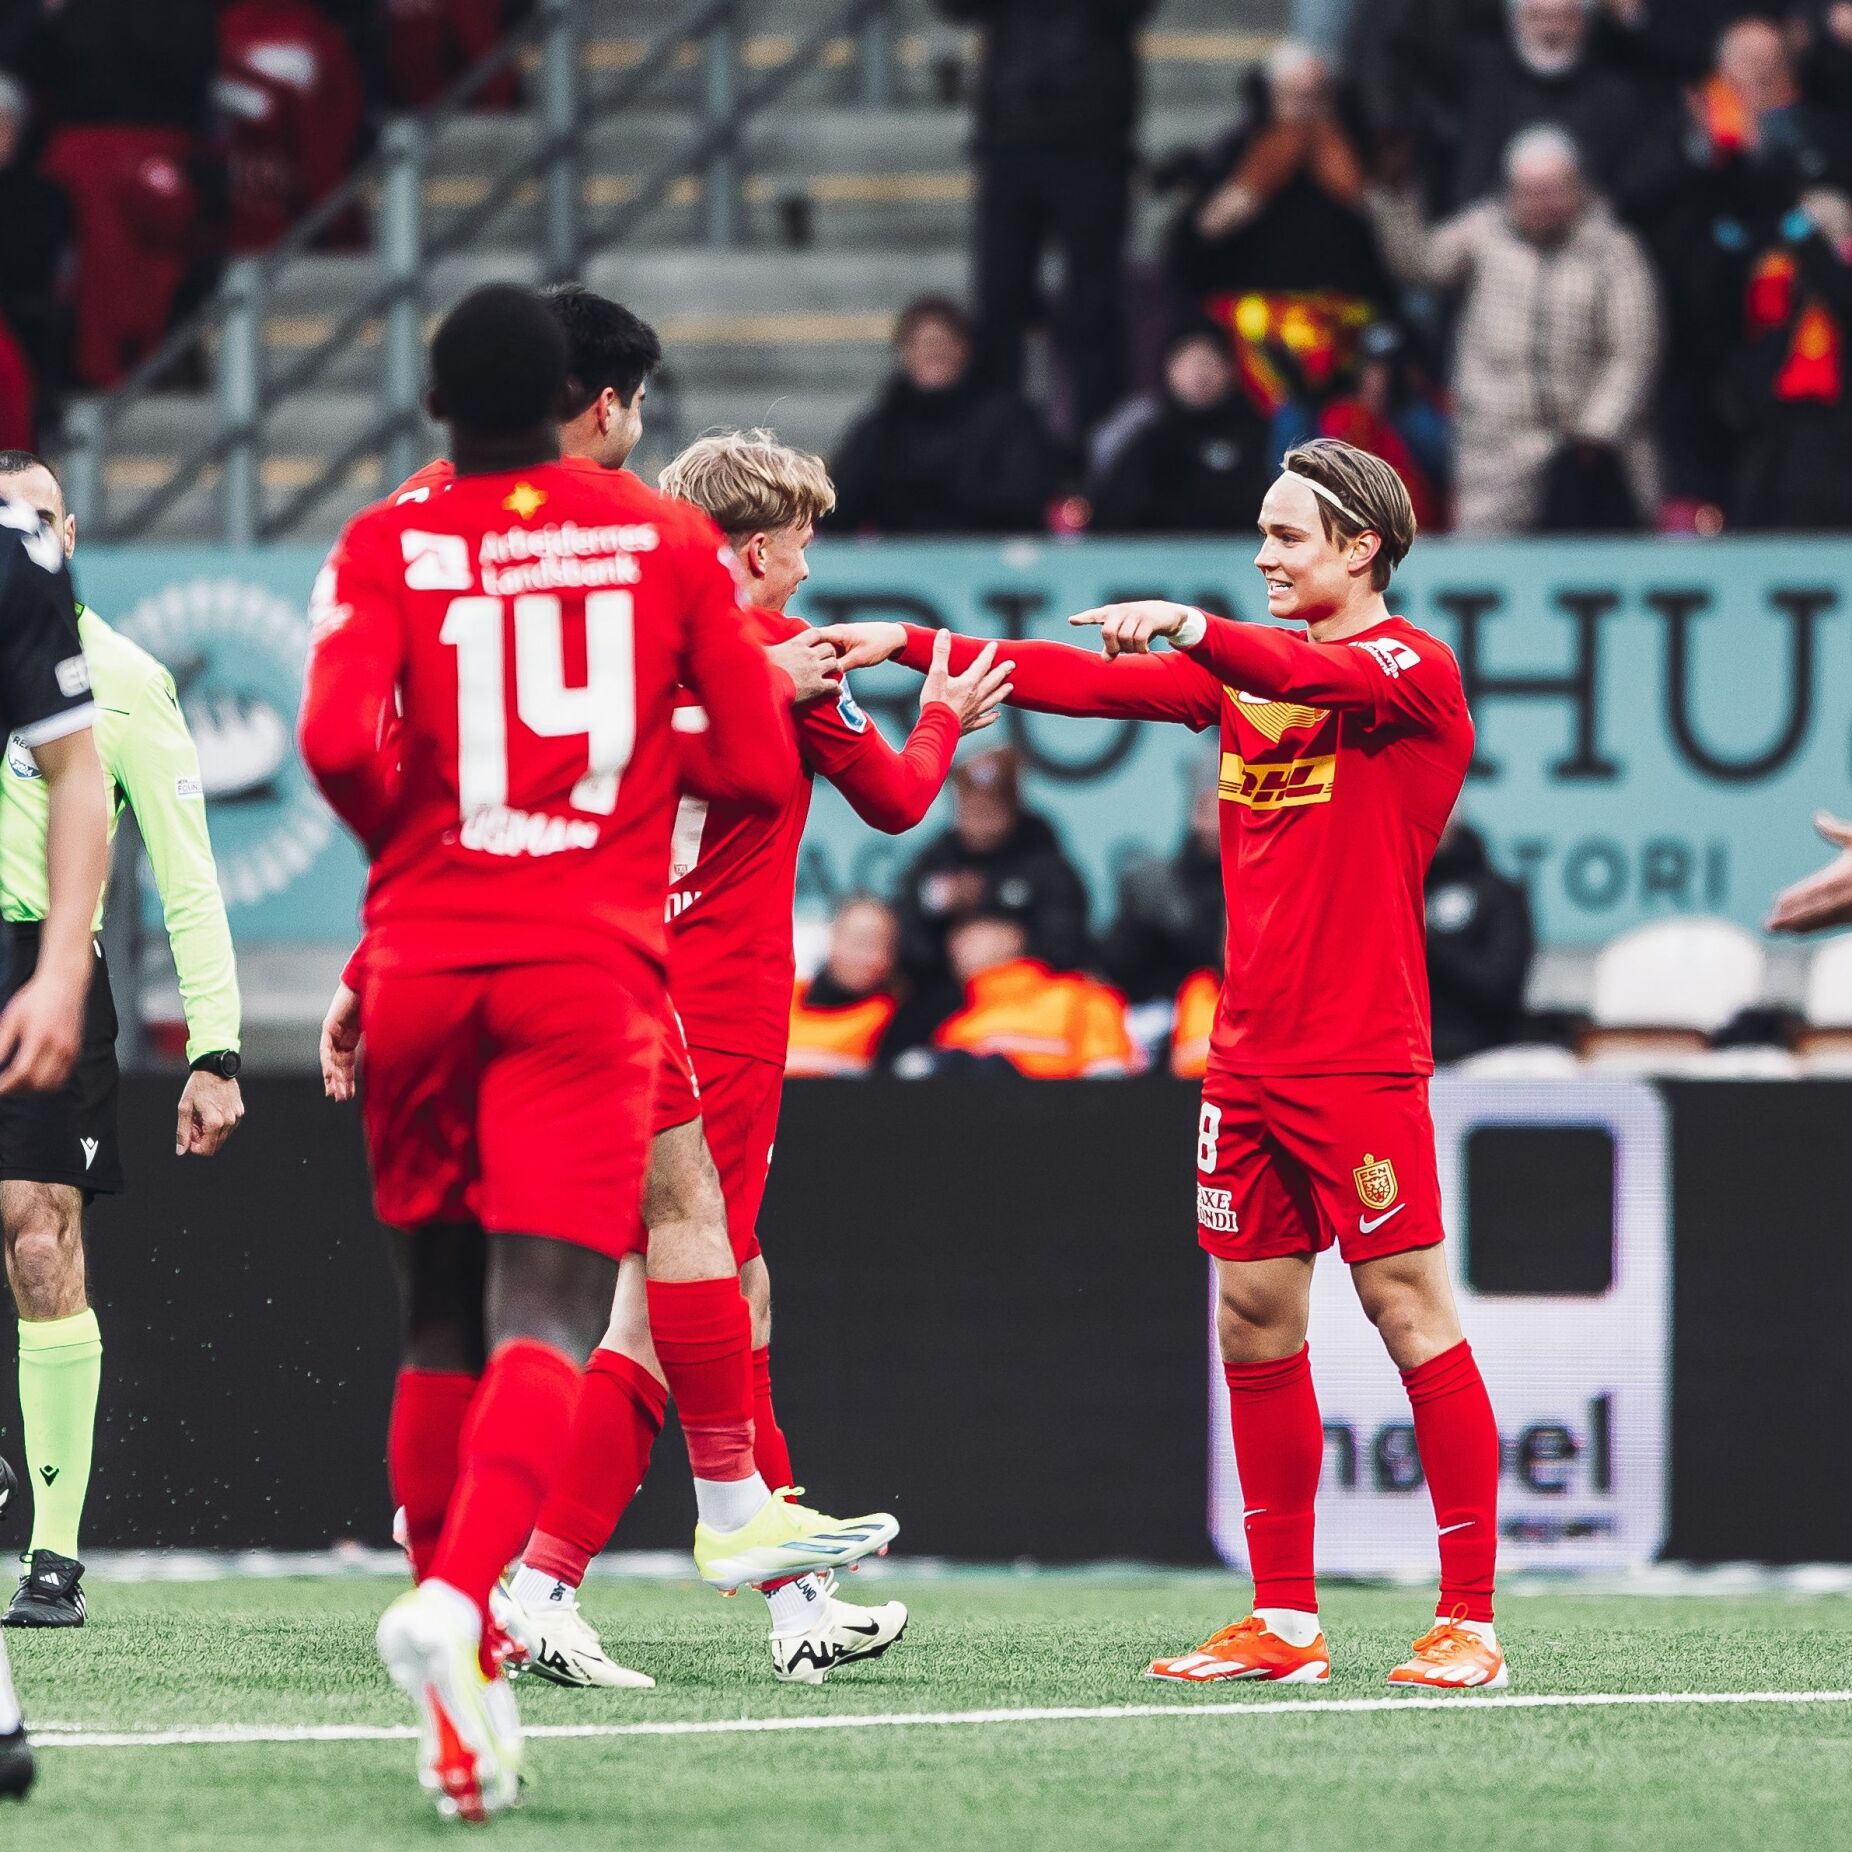 Schjelderup brilha na Dinamarca: "Vou regressar ao Benfica e estou muito ansioso"